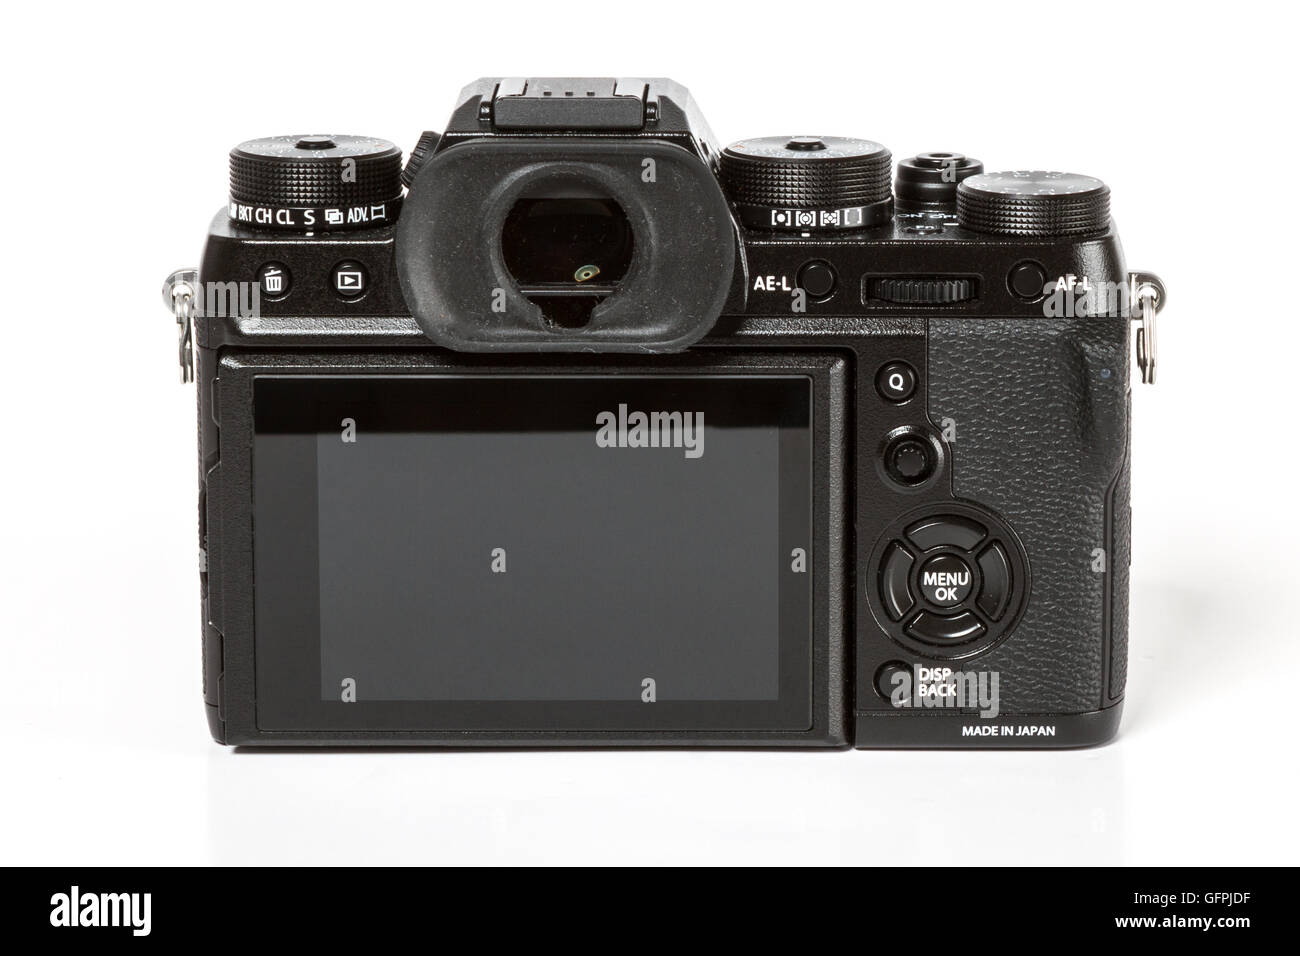 FUJIFILM X-T2, 24 mégapixels, vidéo 4K de l'arrière de l'appareil photo mirrorless sur fond blanc Banque D'Images